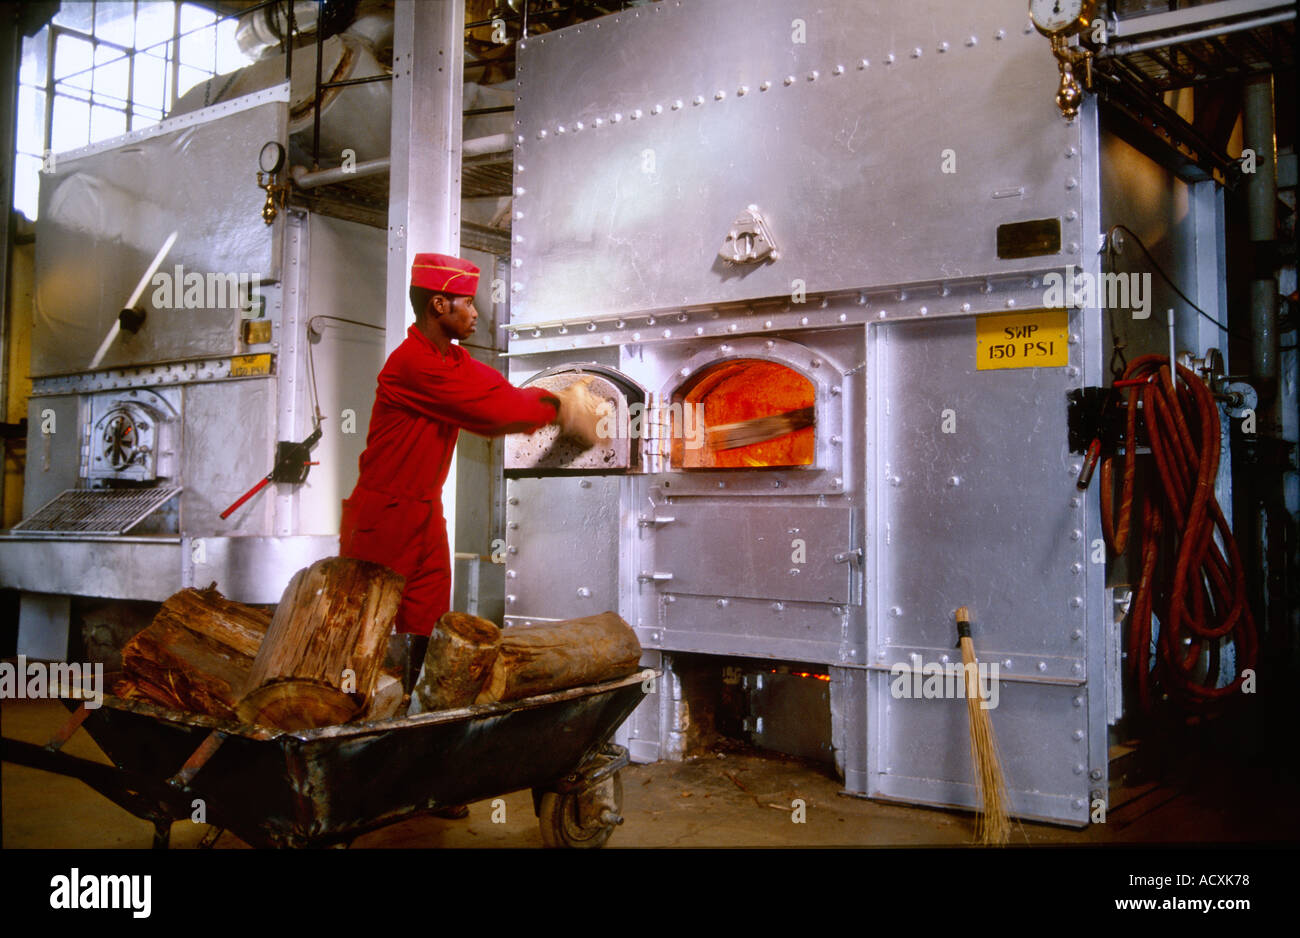 Man shovelling wood into oven for drying tea, Brooke Bond Tea Factory Plant, Kericho, Kenya Stock Photo